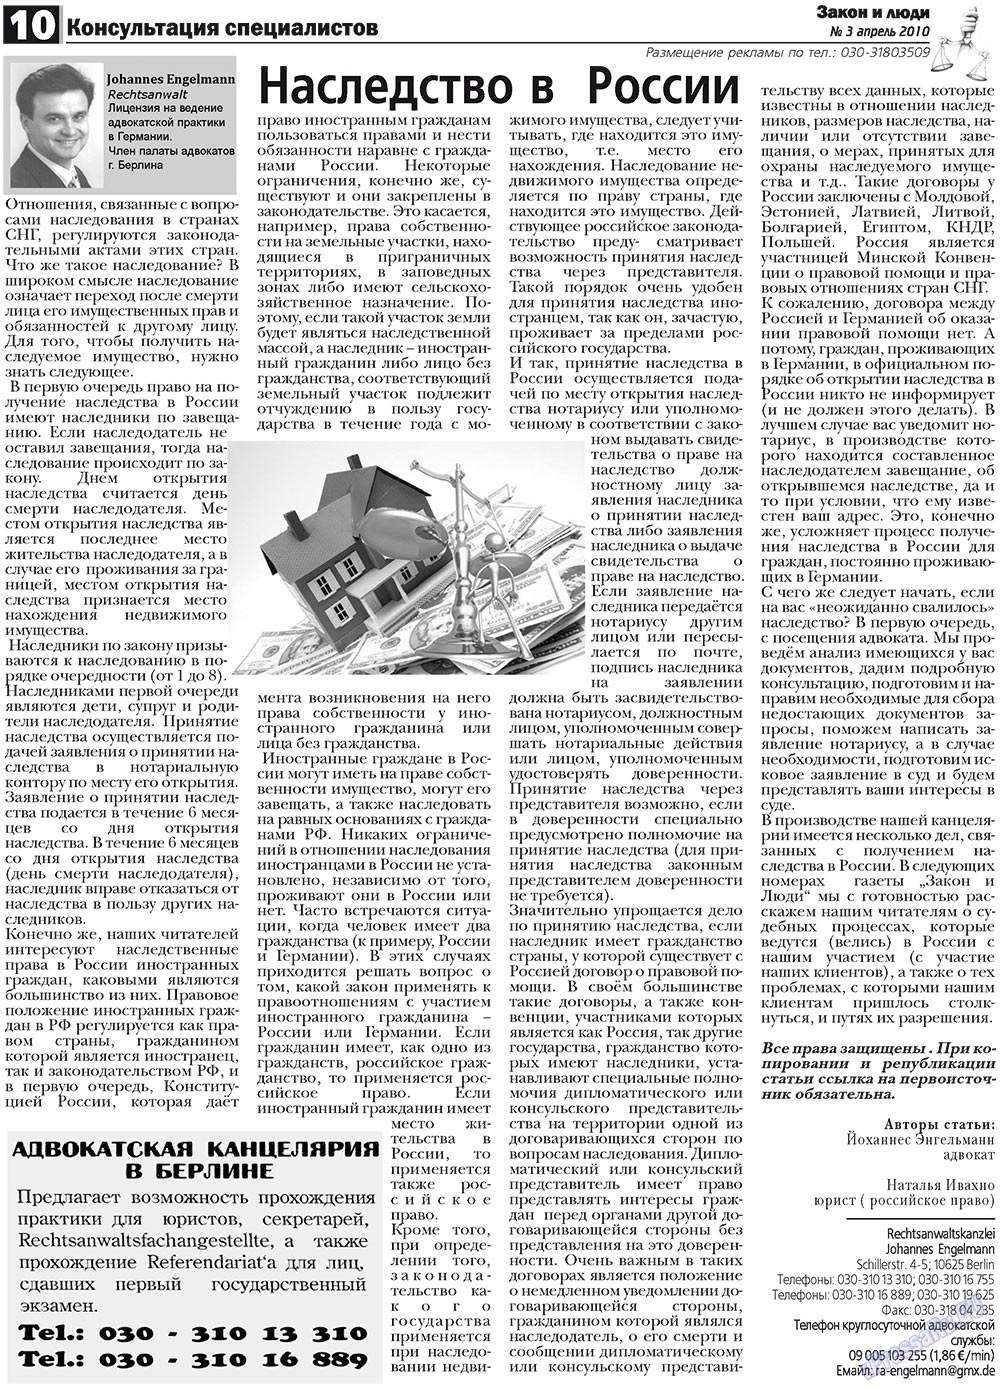 Закон и люди, газета. 2010 №3 стр.10